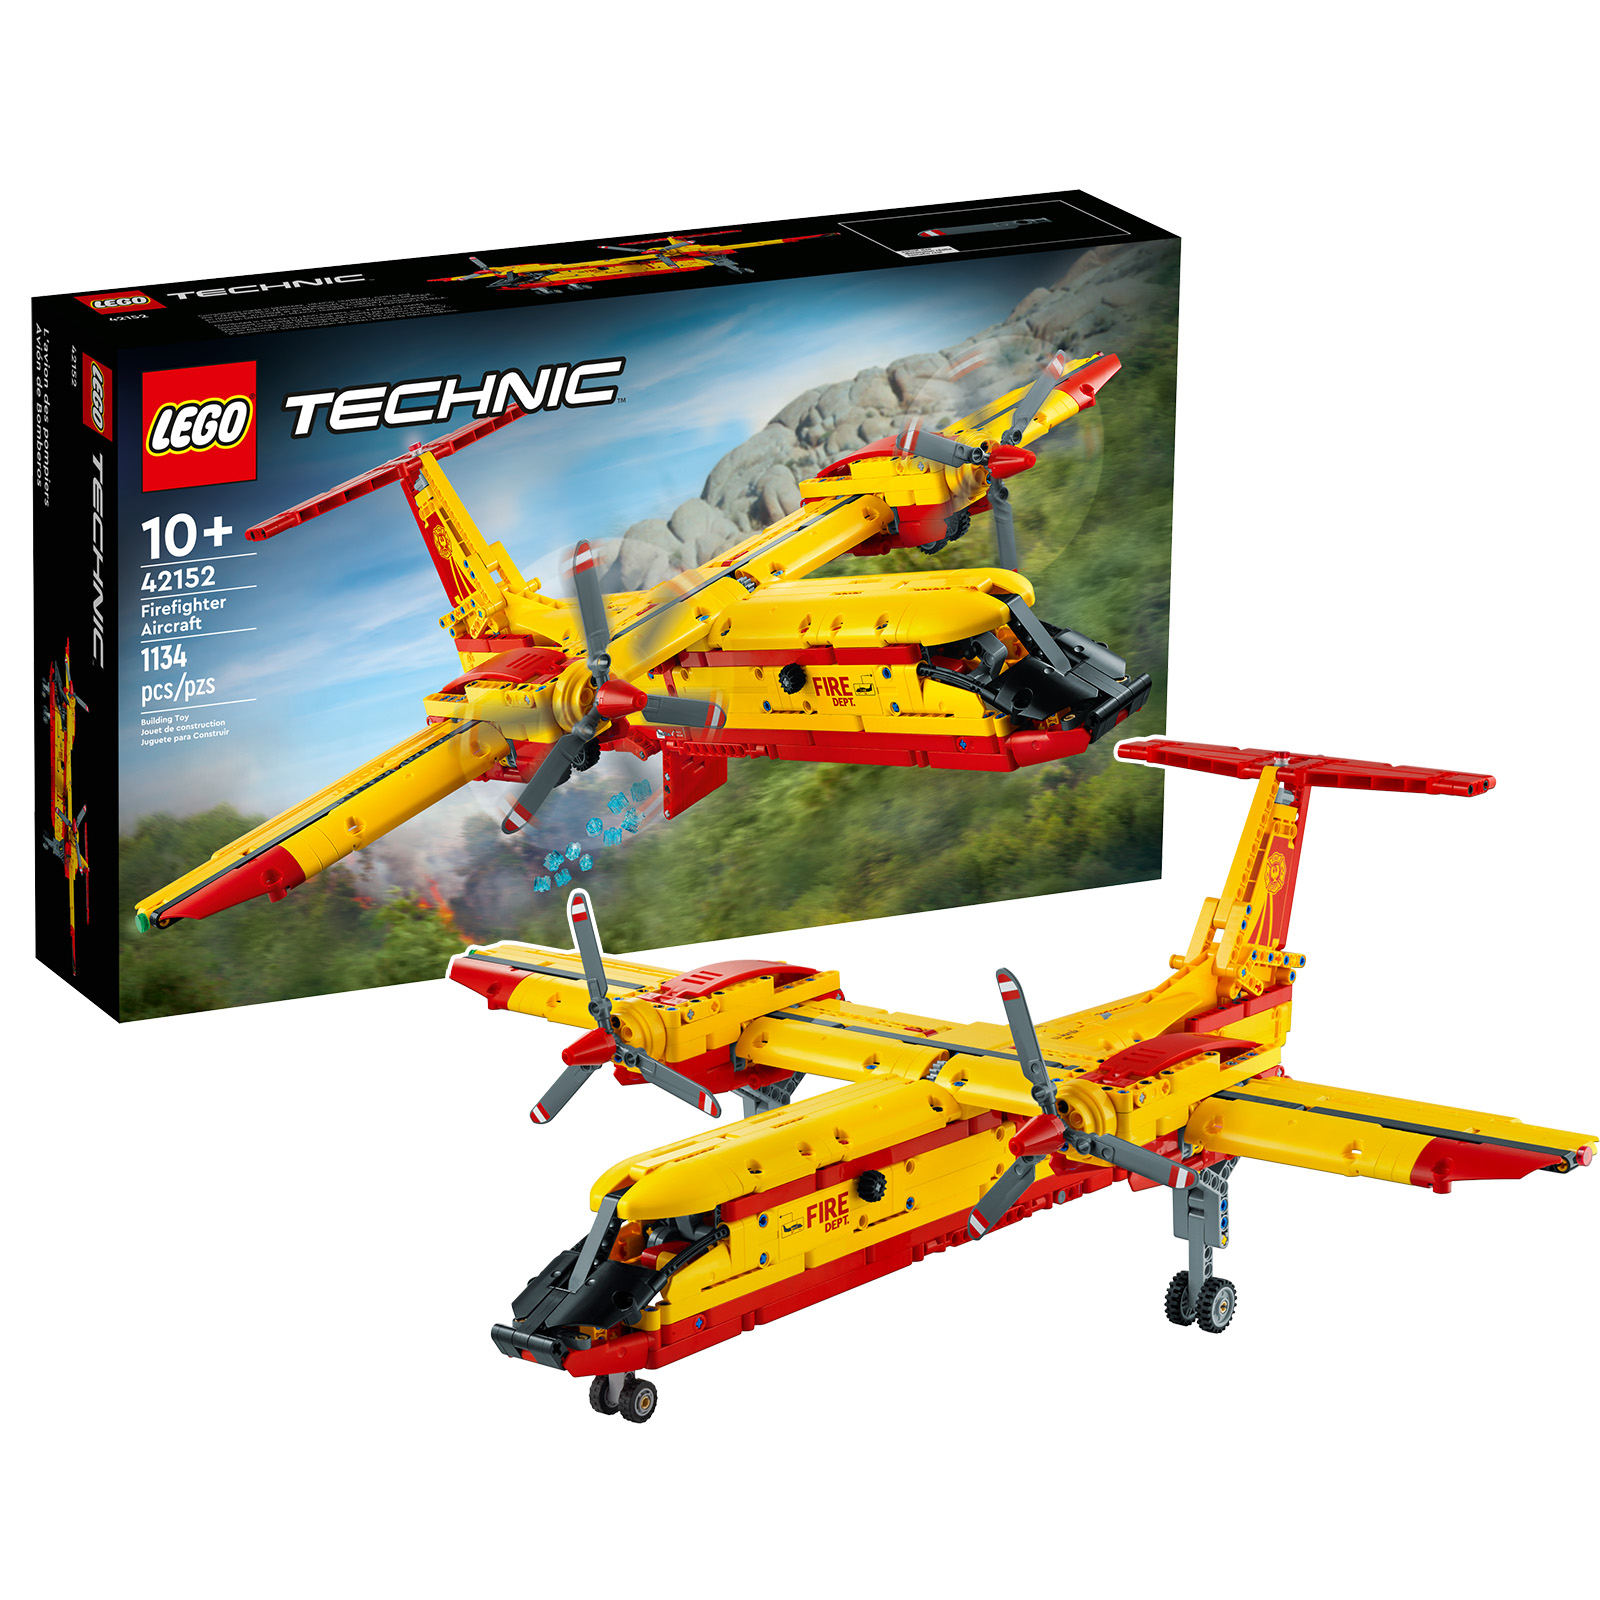 Sur le Shop LEGO : le set LEGO Technic 42152 Firefighter Aircraft est en précommande